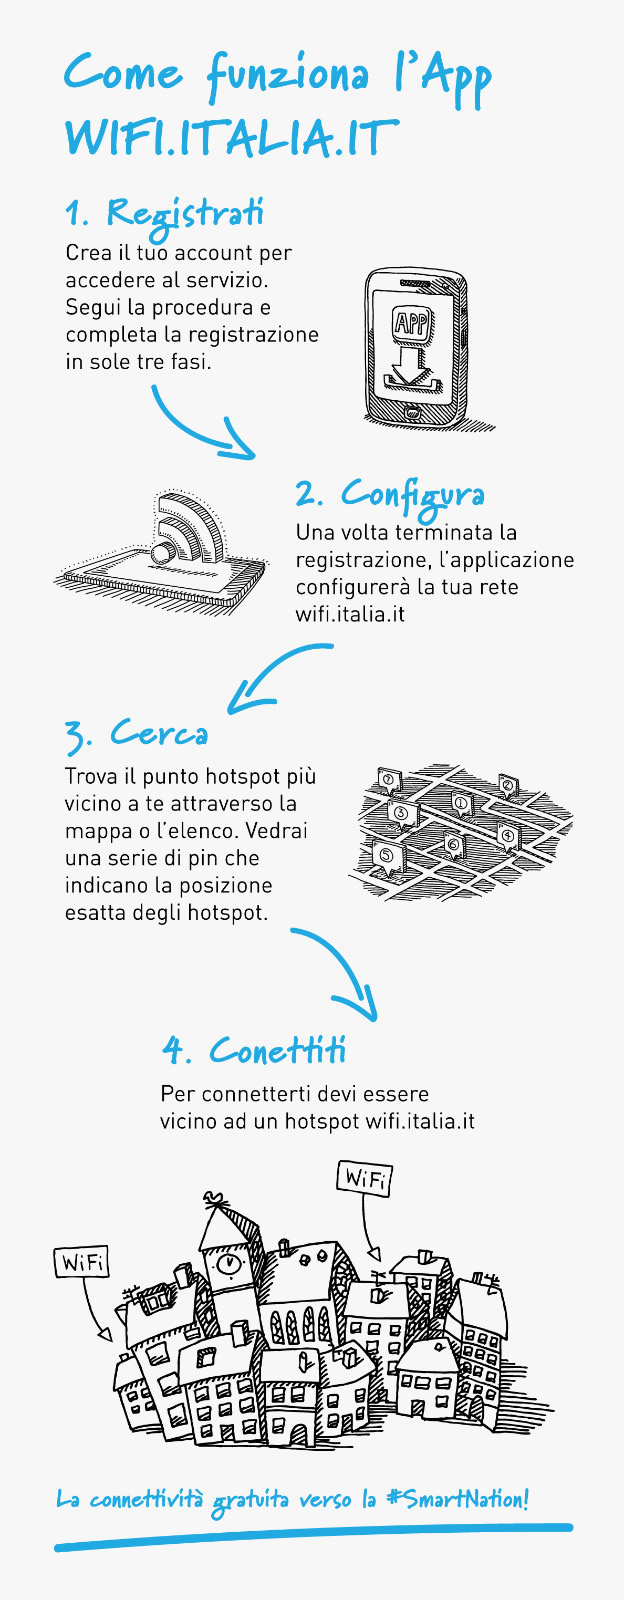 WiFi Itaia